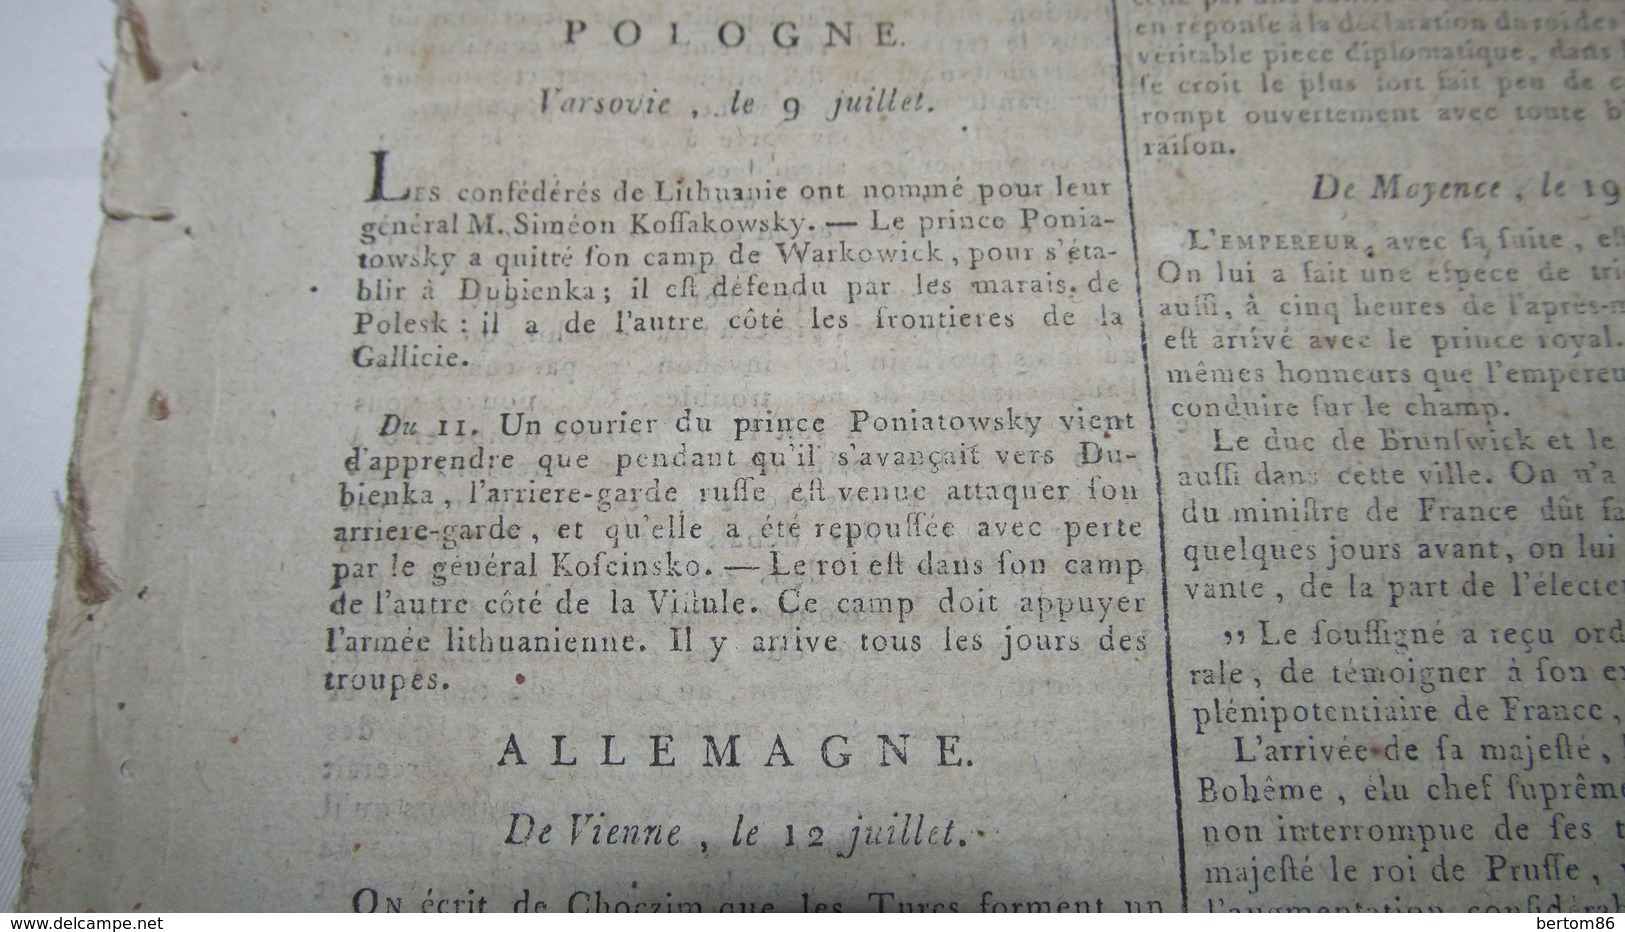 POLOGNE - PETITES NOUVELLES DE LA POLOGNE ET DU PRINCE PONATOWSKI - JUILLET 1792. - Journaux Anciens - Avant 1800